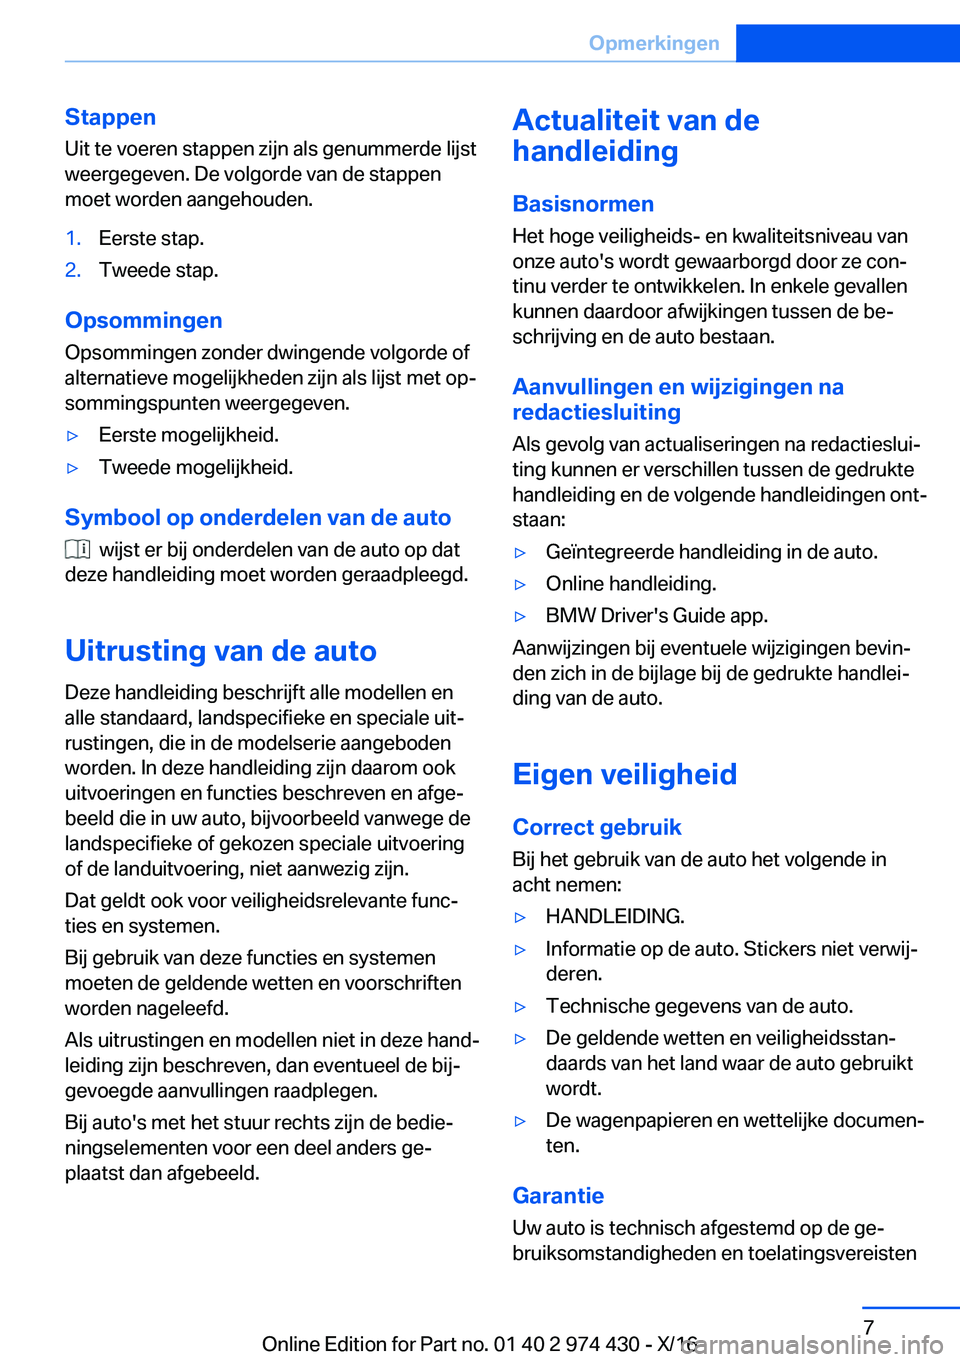 BMW 4 SERIES GRAN COUPE 2017  Instructieboekjes (in Dutch) �S�t�a�p�p�e�n
�U�i�t� �t�e� �v�o�e�r�e�n� �s�t�a�p�p�e�n� �z�i�j�n� �a�l�s� �g�e�n�u�m�m�e�r�d�e� �l�i�j�s�t �w�e�e�r�g�e�g�e�v�e�n�.� �D�e� �v�o�l�g�o�r�d�e� �v�a�n� �d�e� �s�t�a�p�p�e�n�m�o�e�t� �w